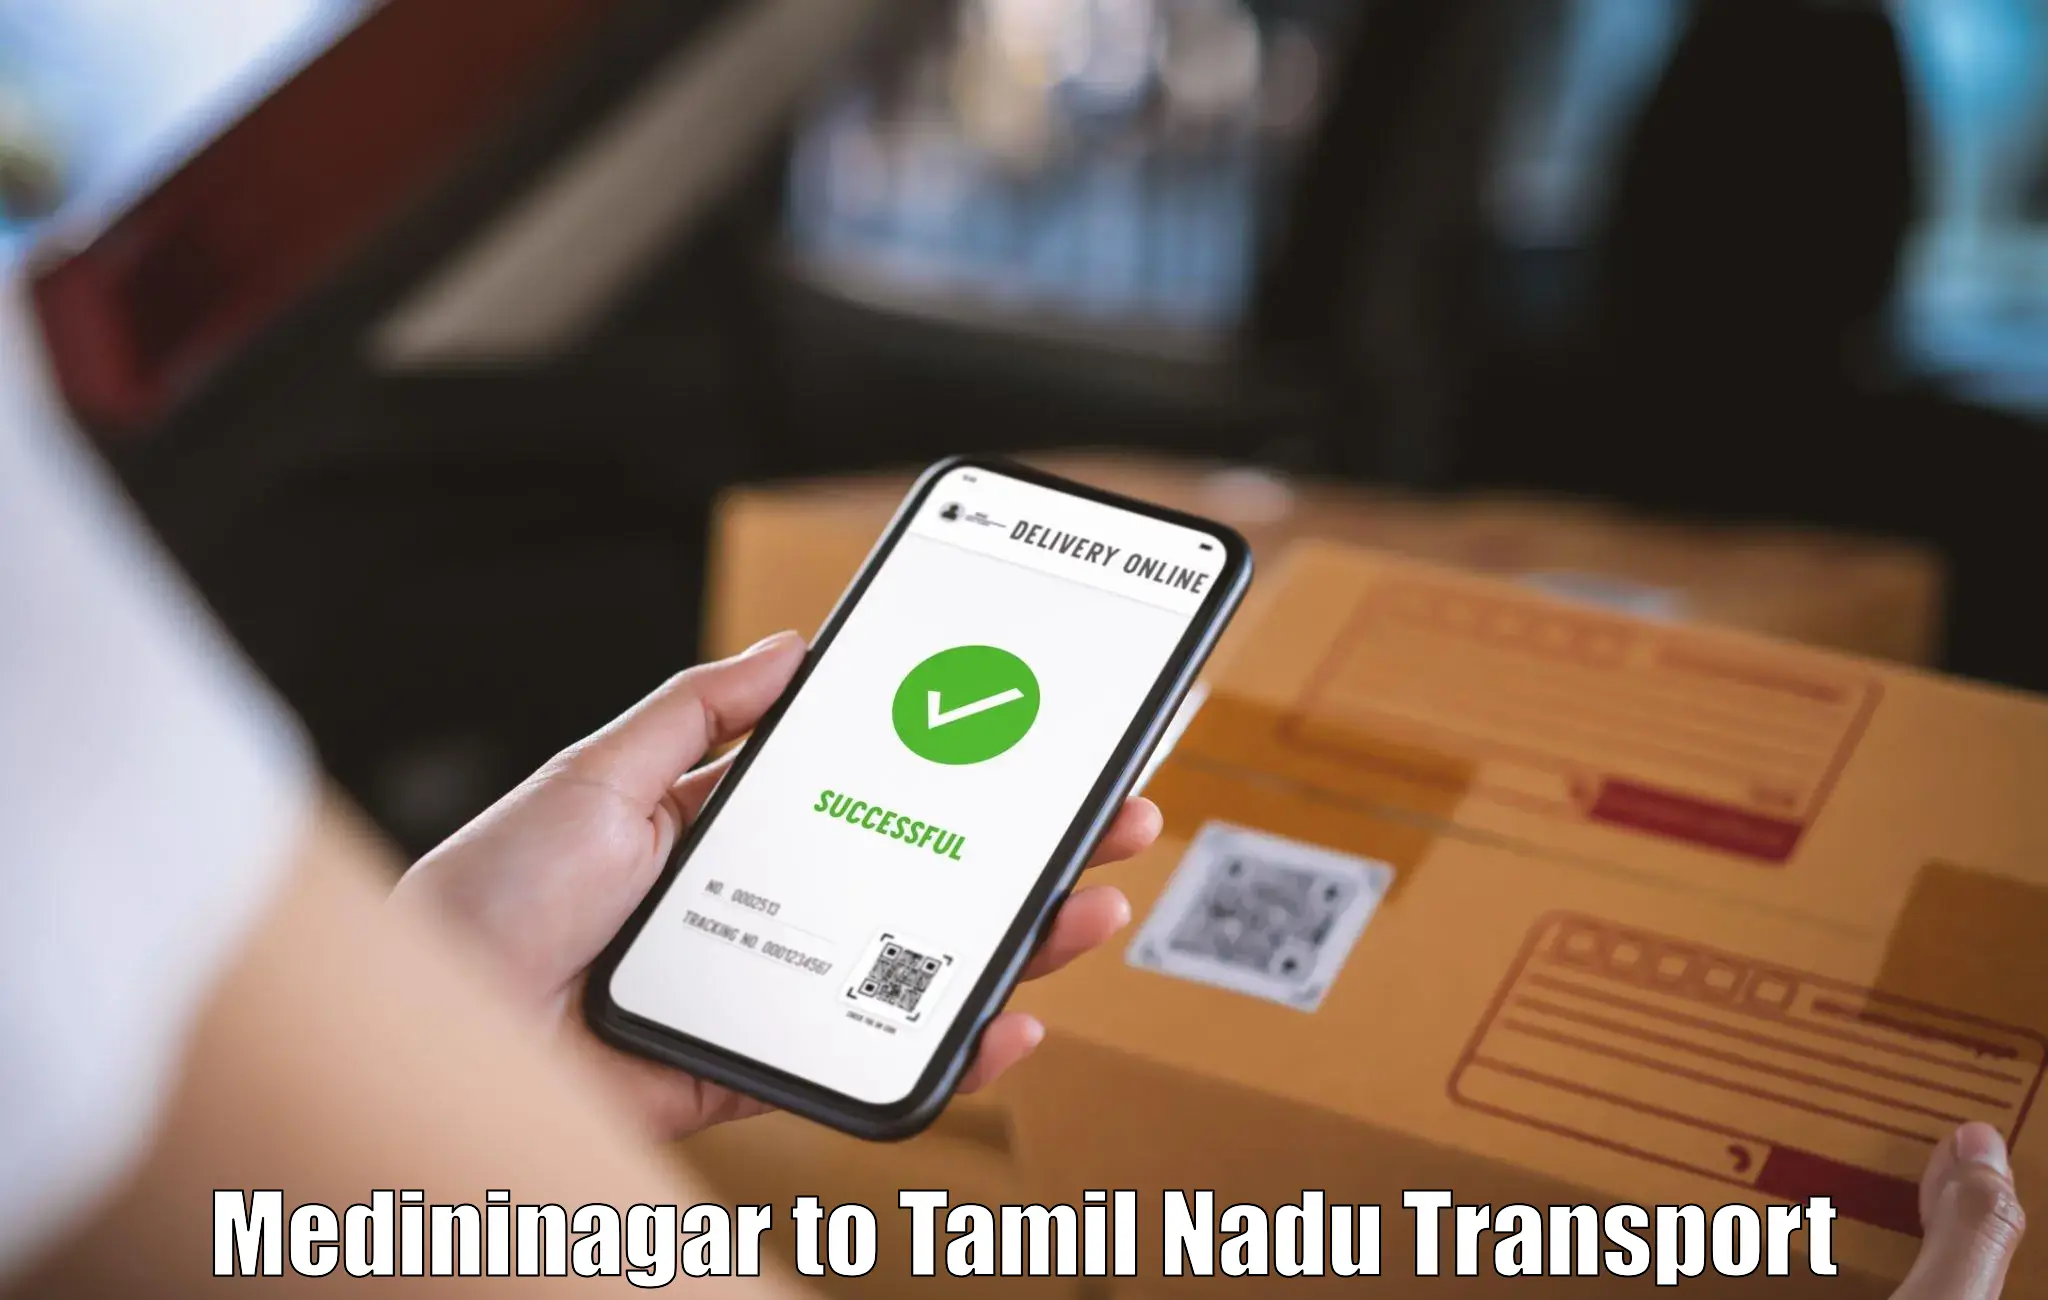 Luggage transport services Medininagar to Tamil Nadu